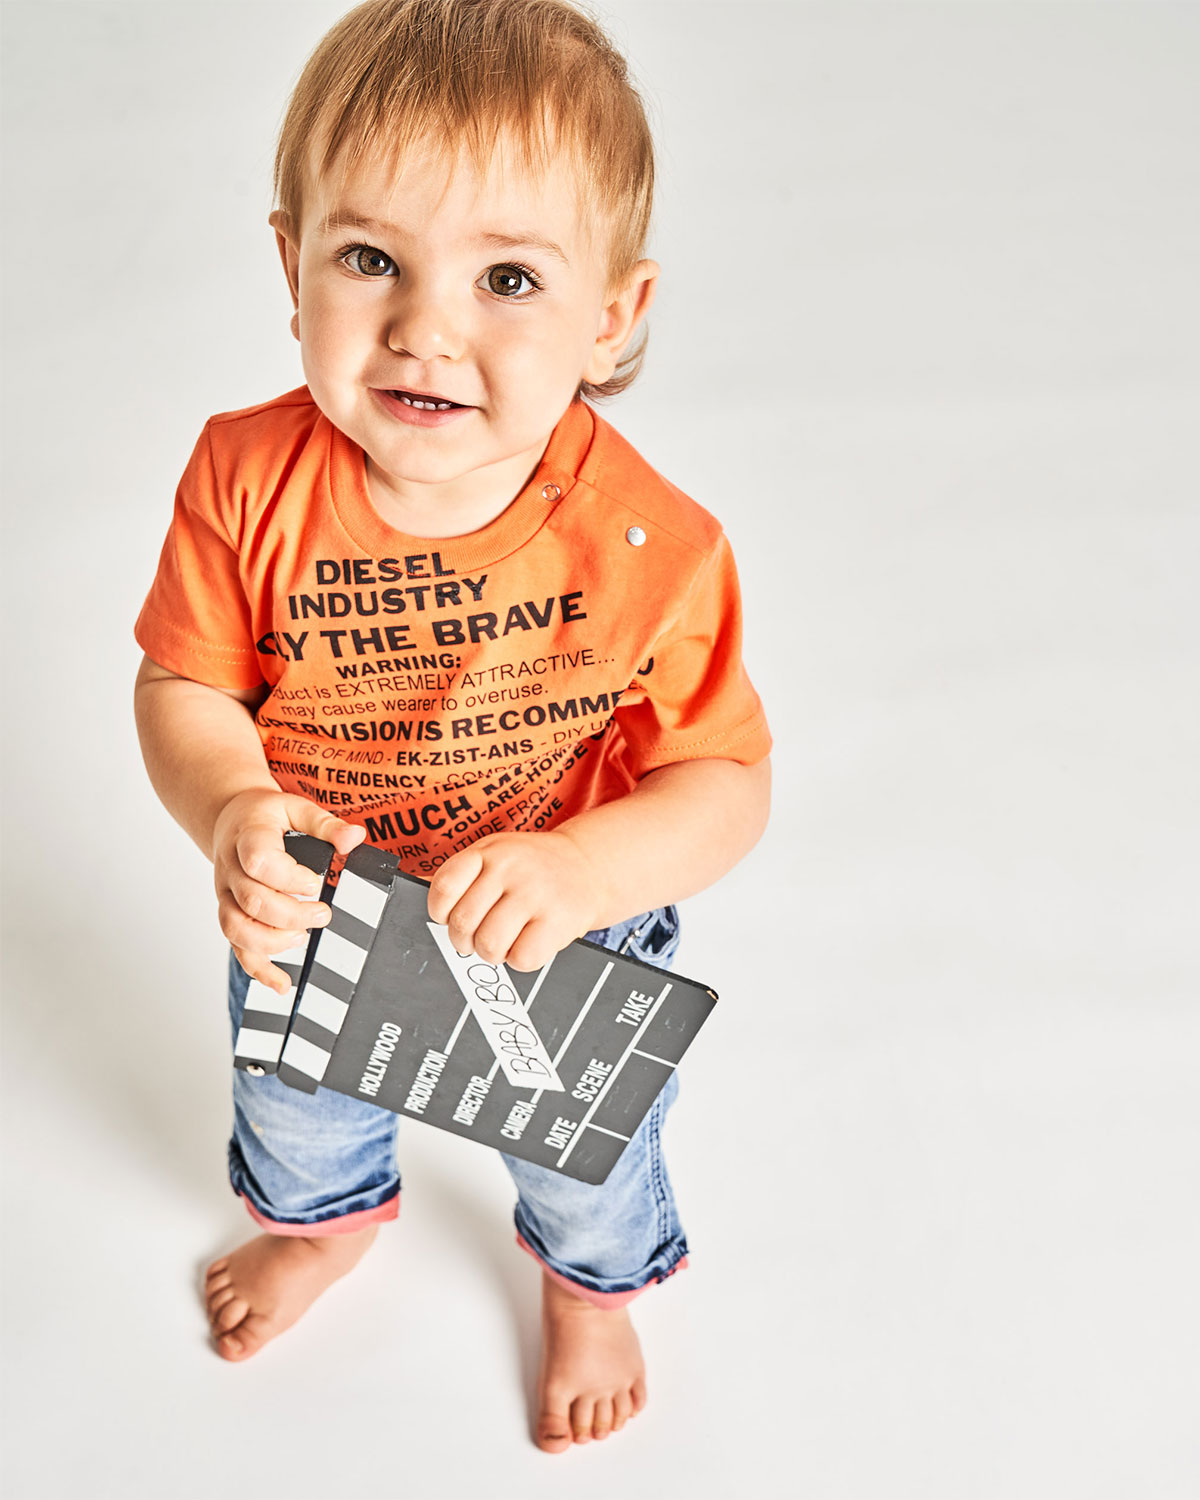 Оранжевая футболка с текстовым принтом Diesel детская, размер 80, цвет оранжевый - фото 2